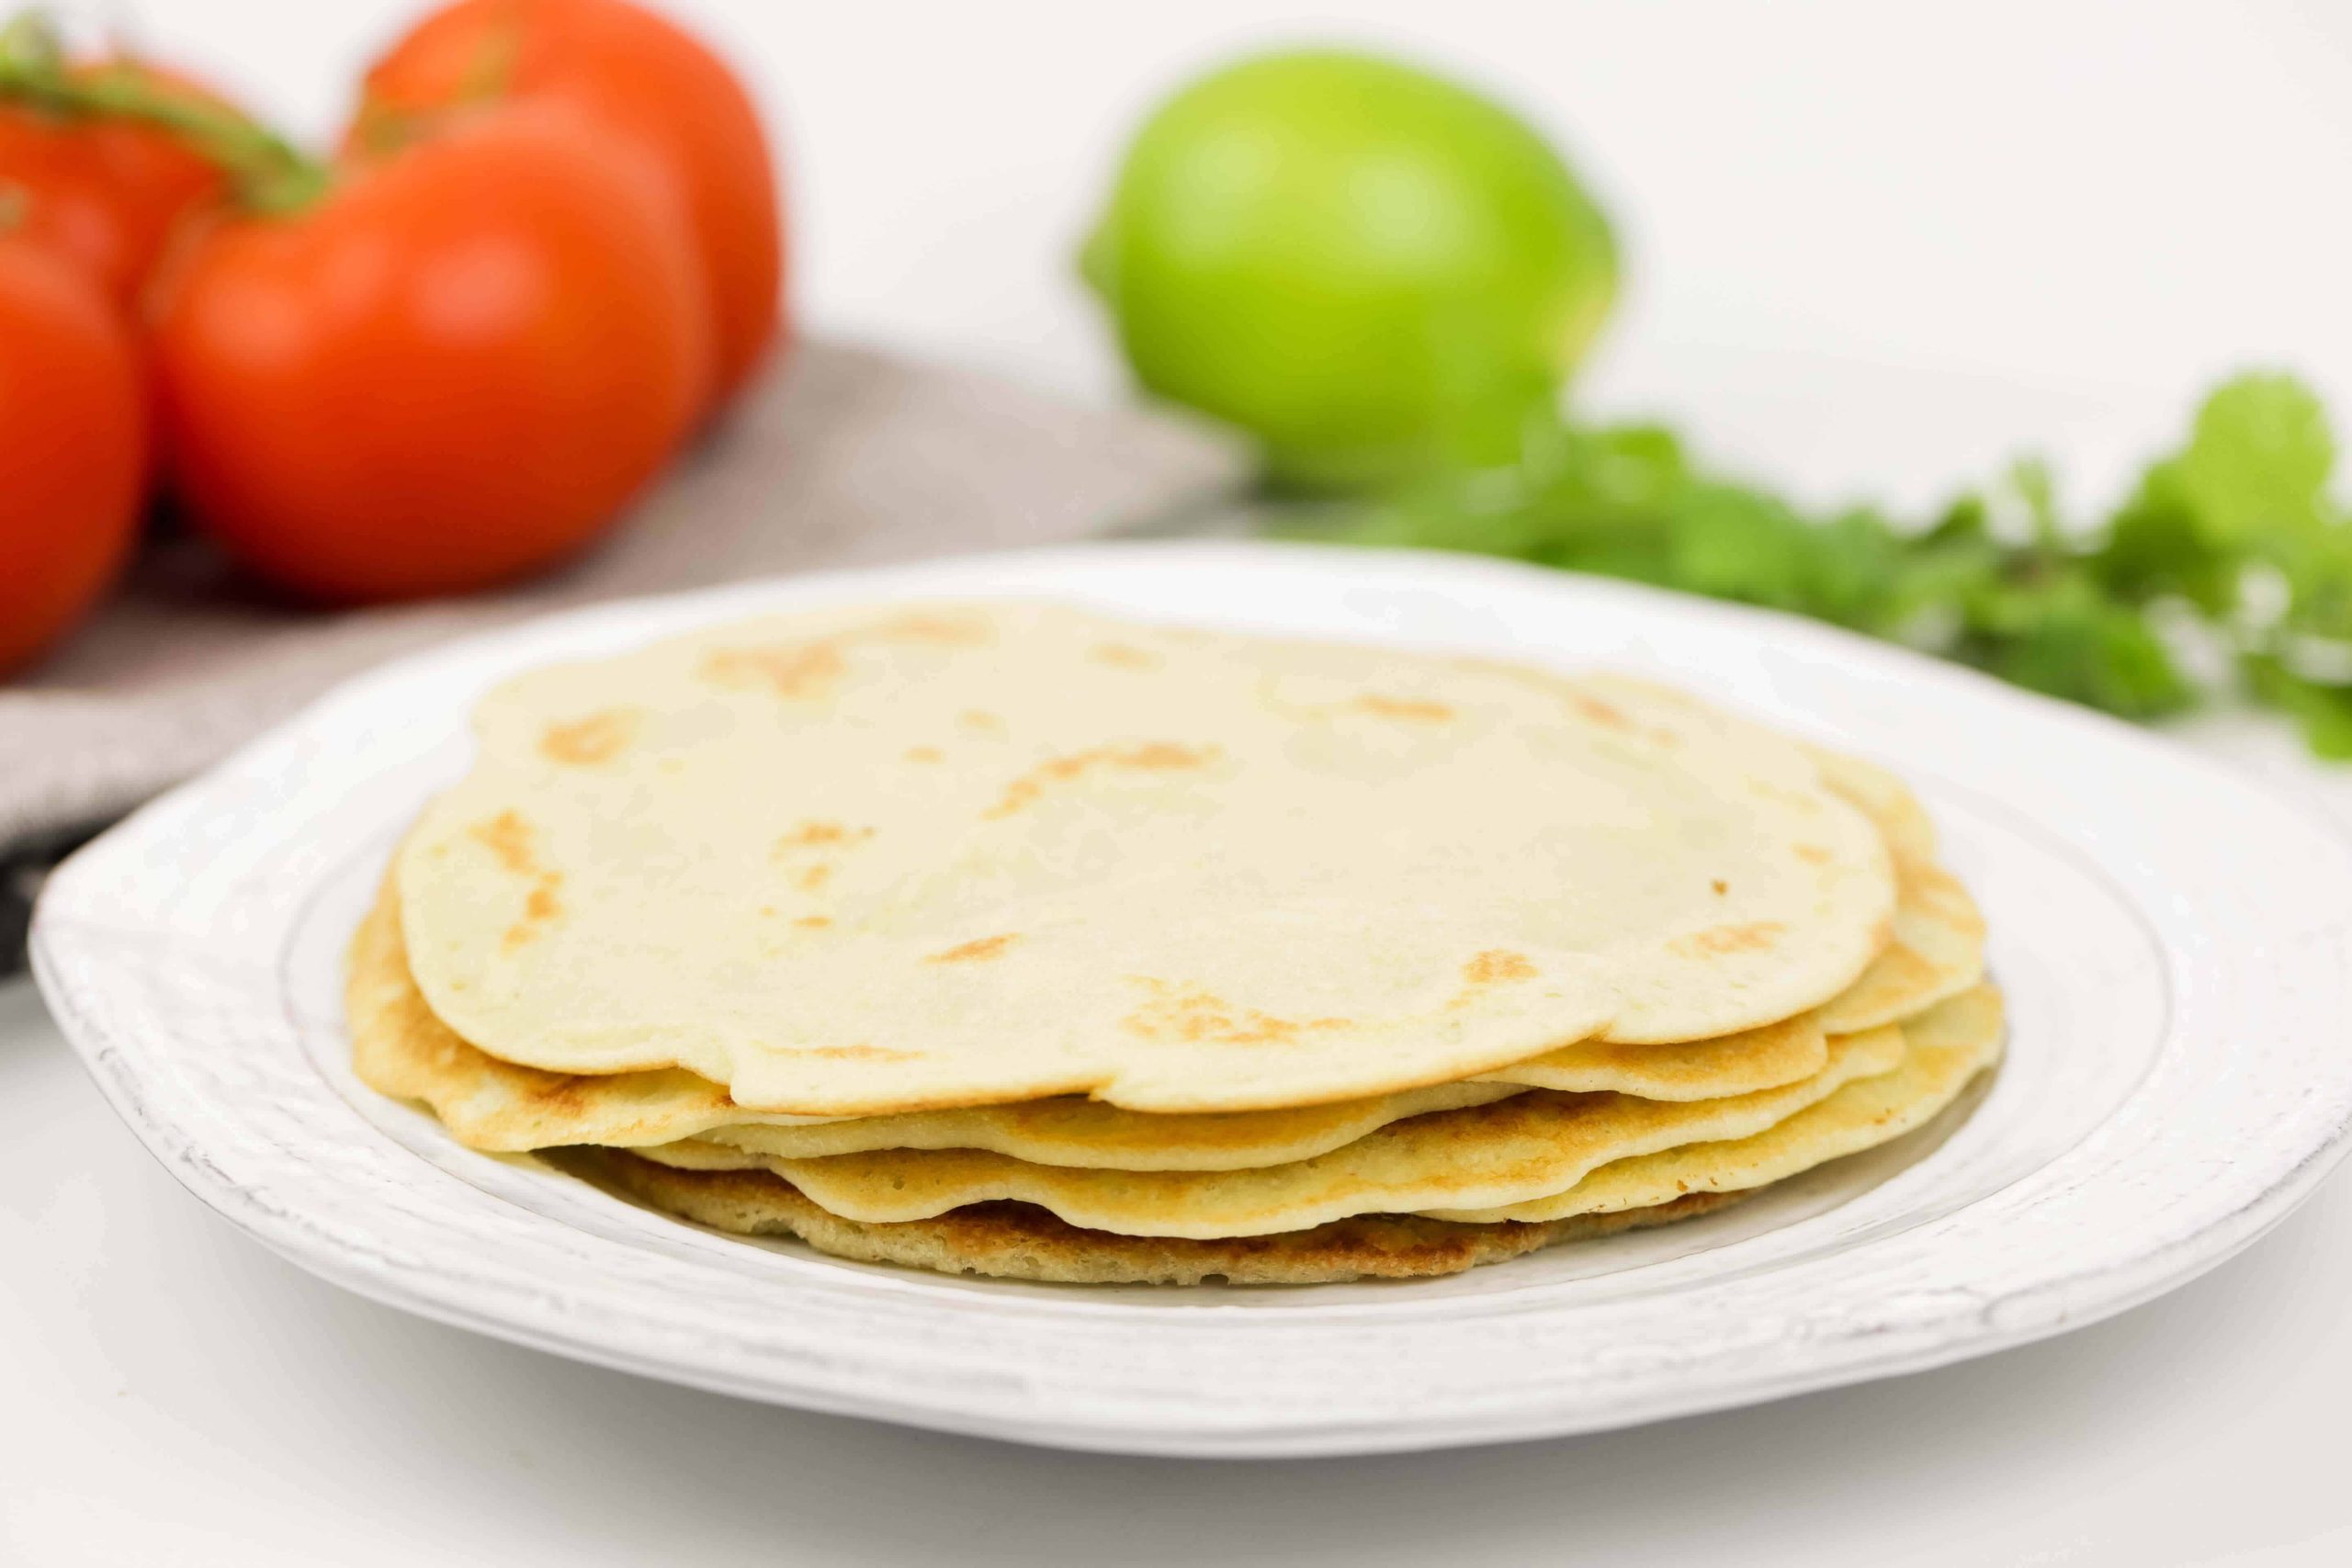 Recette de tortillas paléo — Sans maïs avec des huiles saines